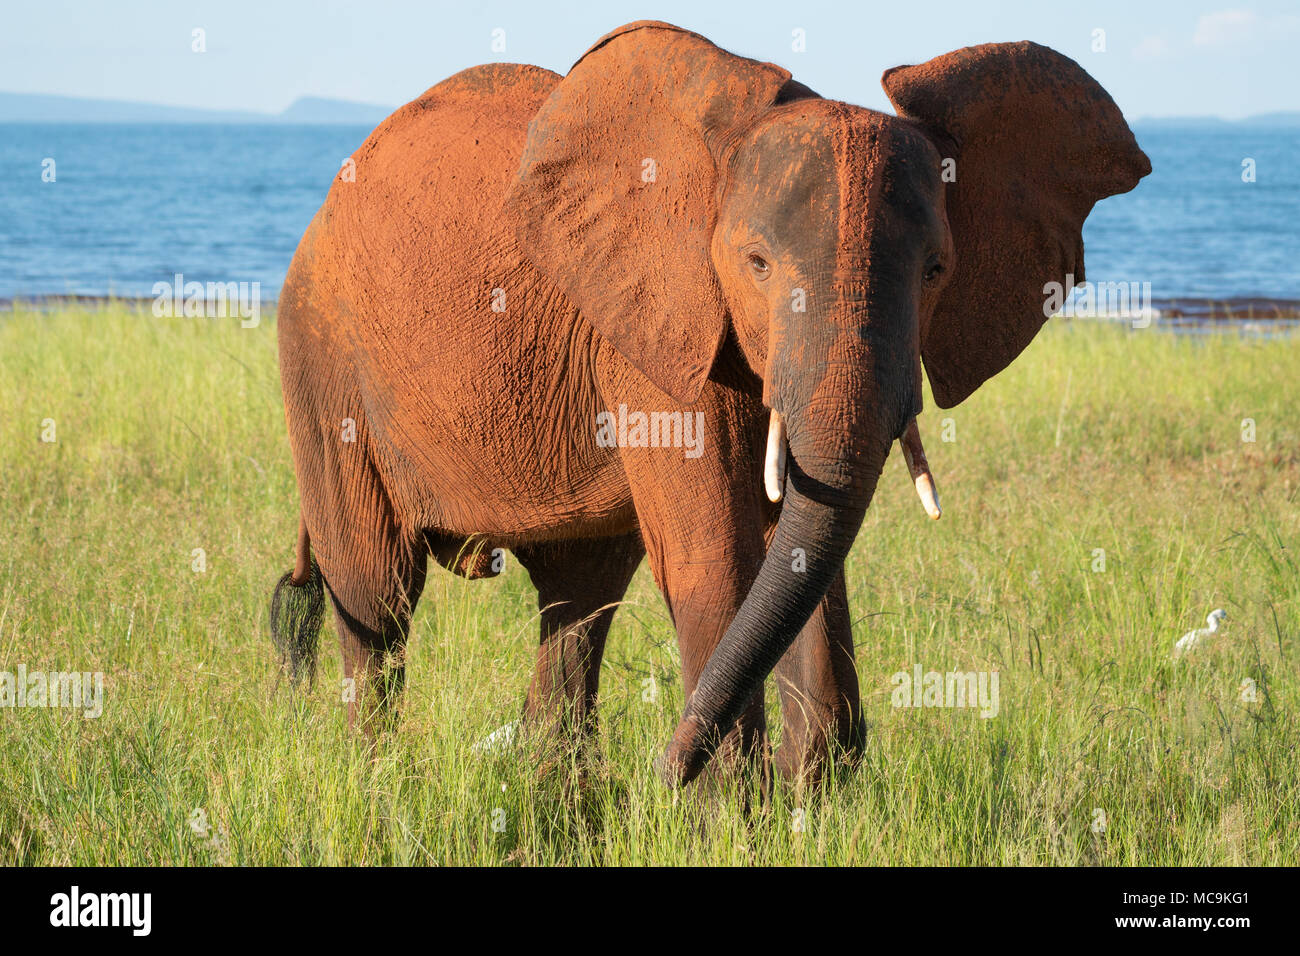 African Elephant near Lake Kariba, Zimbabwe Stock Photo